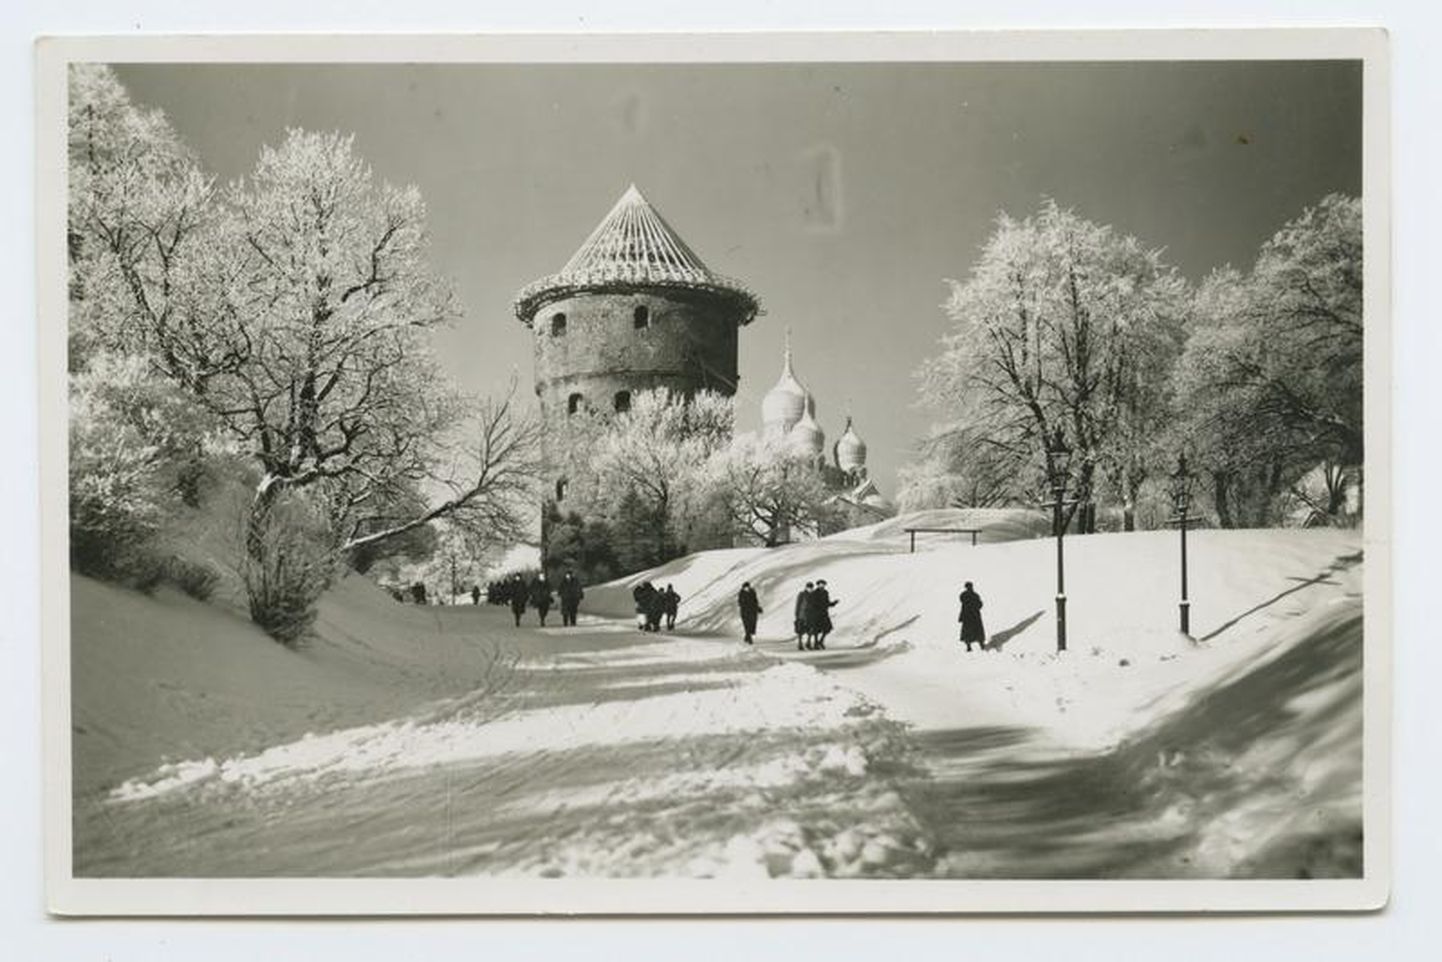 1940. aasta talv oli väga külm ja lumerohke, jaanuaris sündis Jõgeval Eesti külmarekord. Meie muuseumide kogudes on sellest väga külmast talvest vaid üks foto, mis on tehtud 1940. aasta veebruaris Tallinnas.